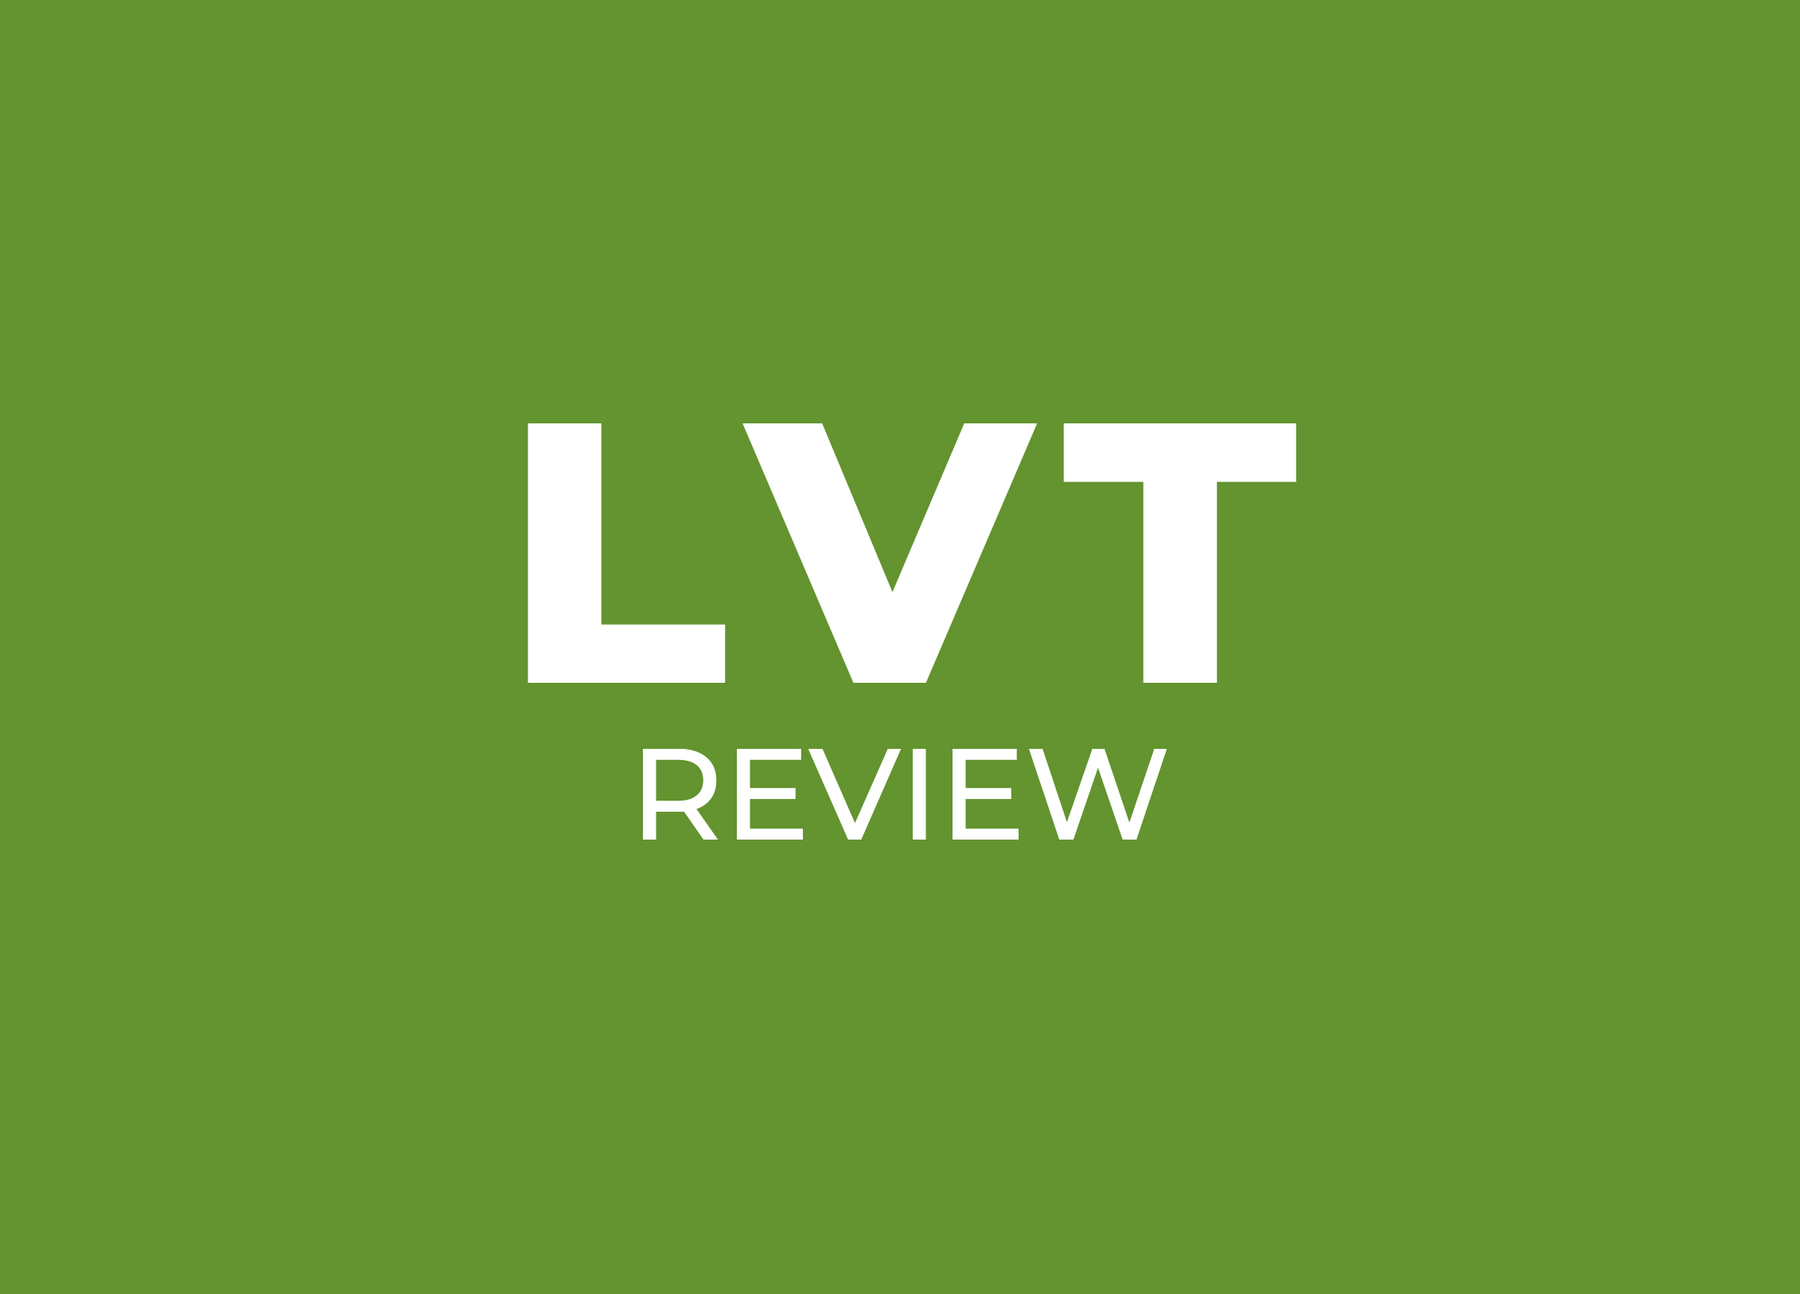 LVT Review